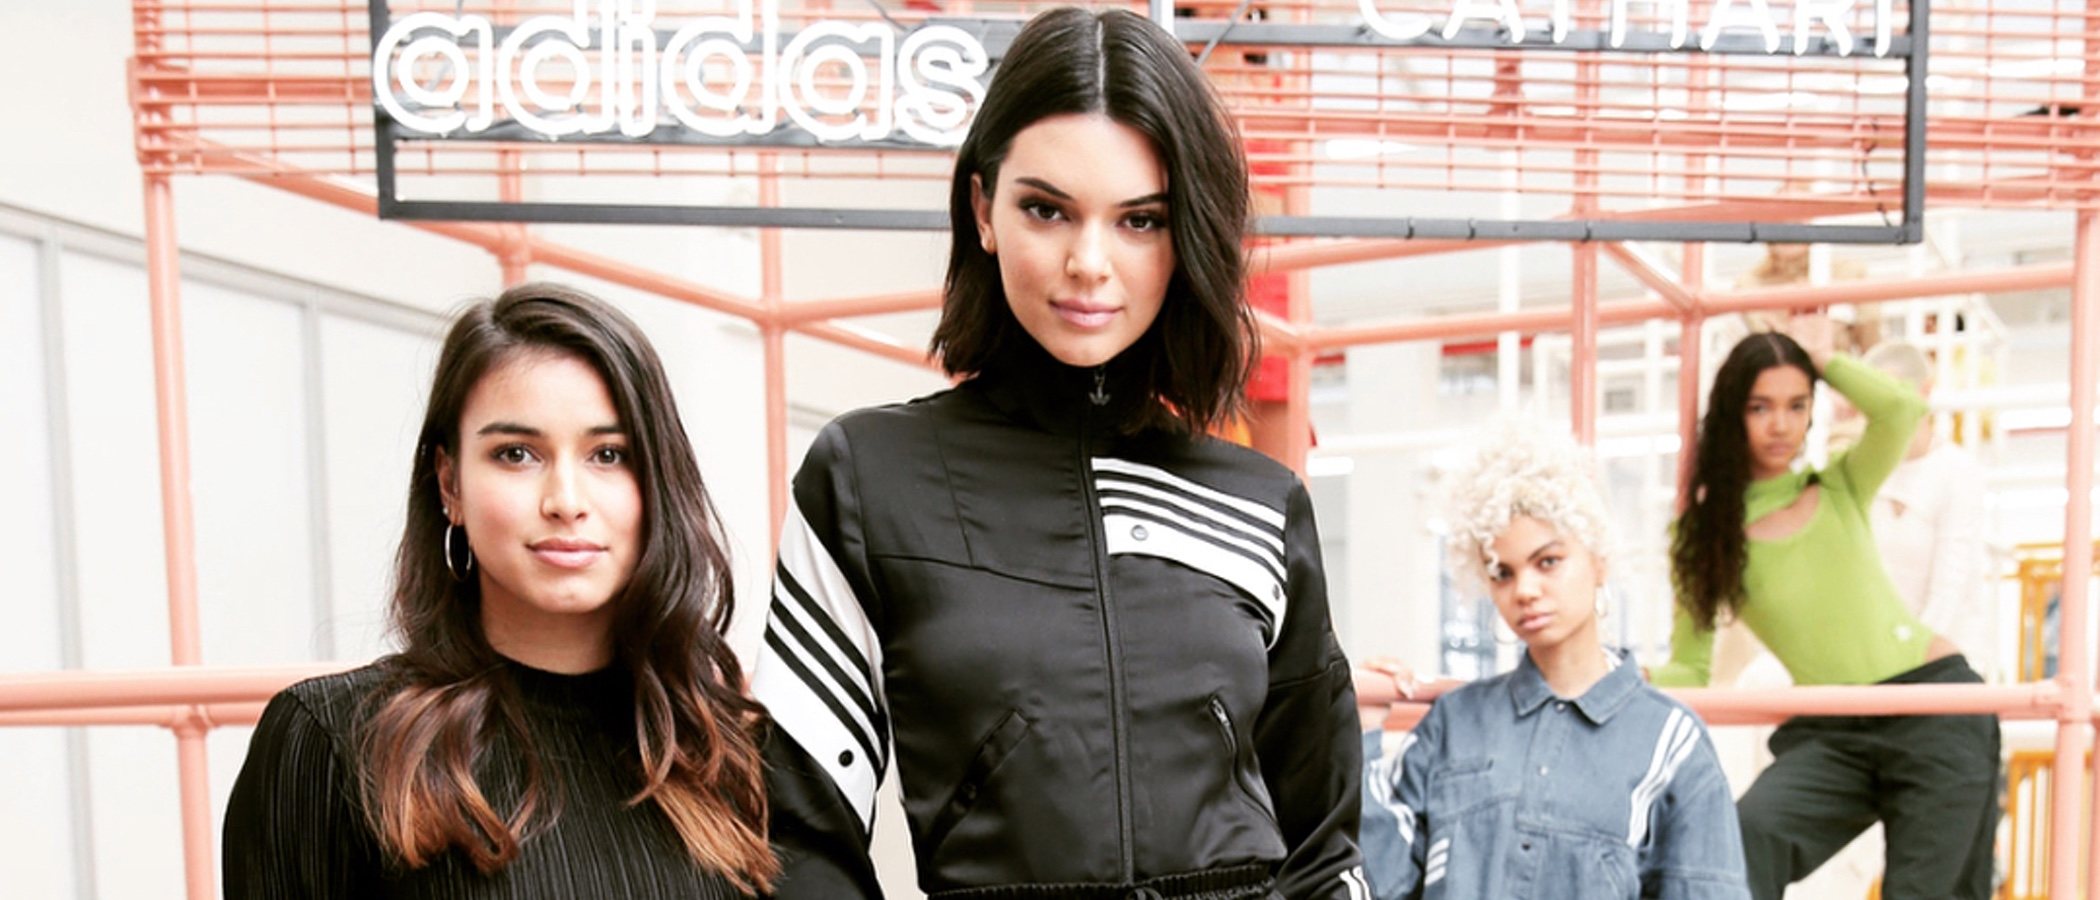 Adidas se inspira en Kendall Jenner para su nueva colección cápsula